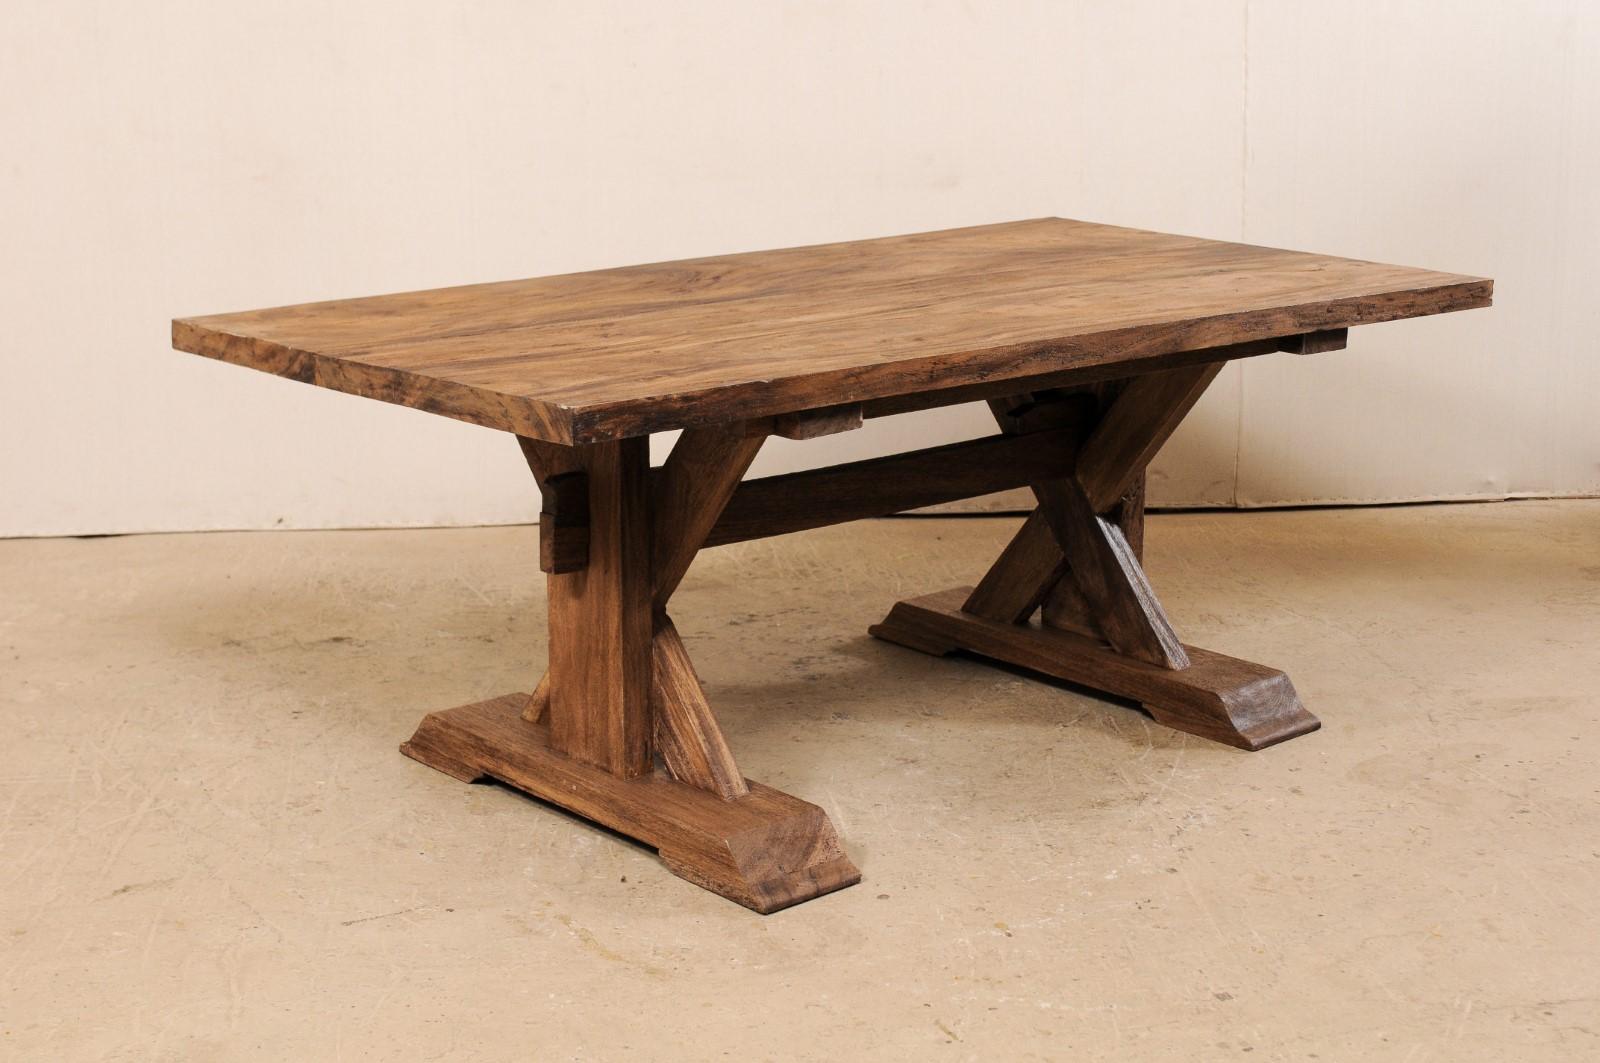 Une table à tréteaux vintage avec une base en forme de X en bois récupéré. Cette table de style tréteau a été fabriquée en bois indonésien récupéré, un bois dur tropical robuste, avec un plateau de forme rectangulaire surélevé par une paire de pieds